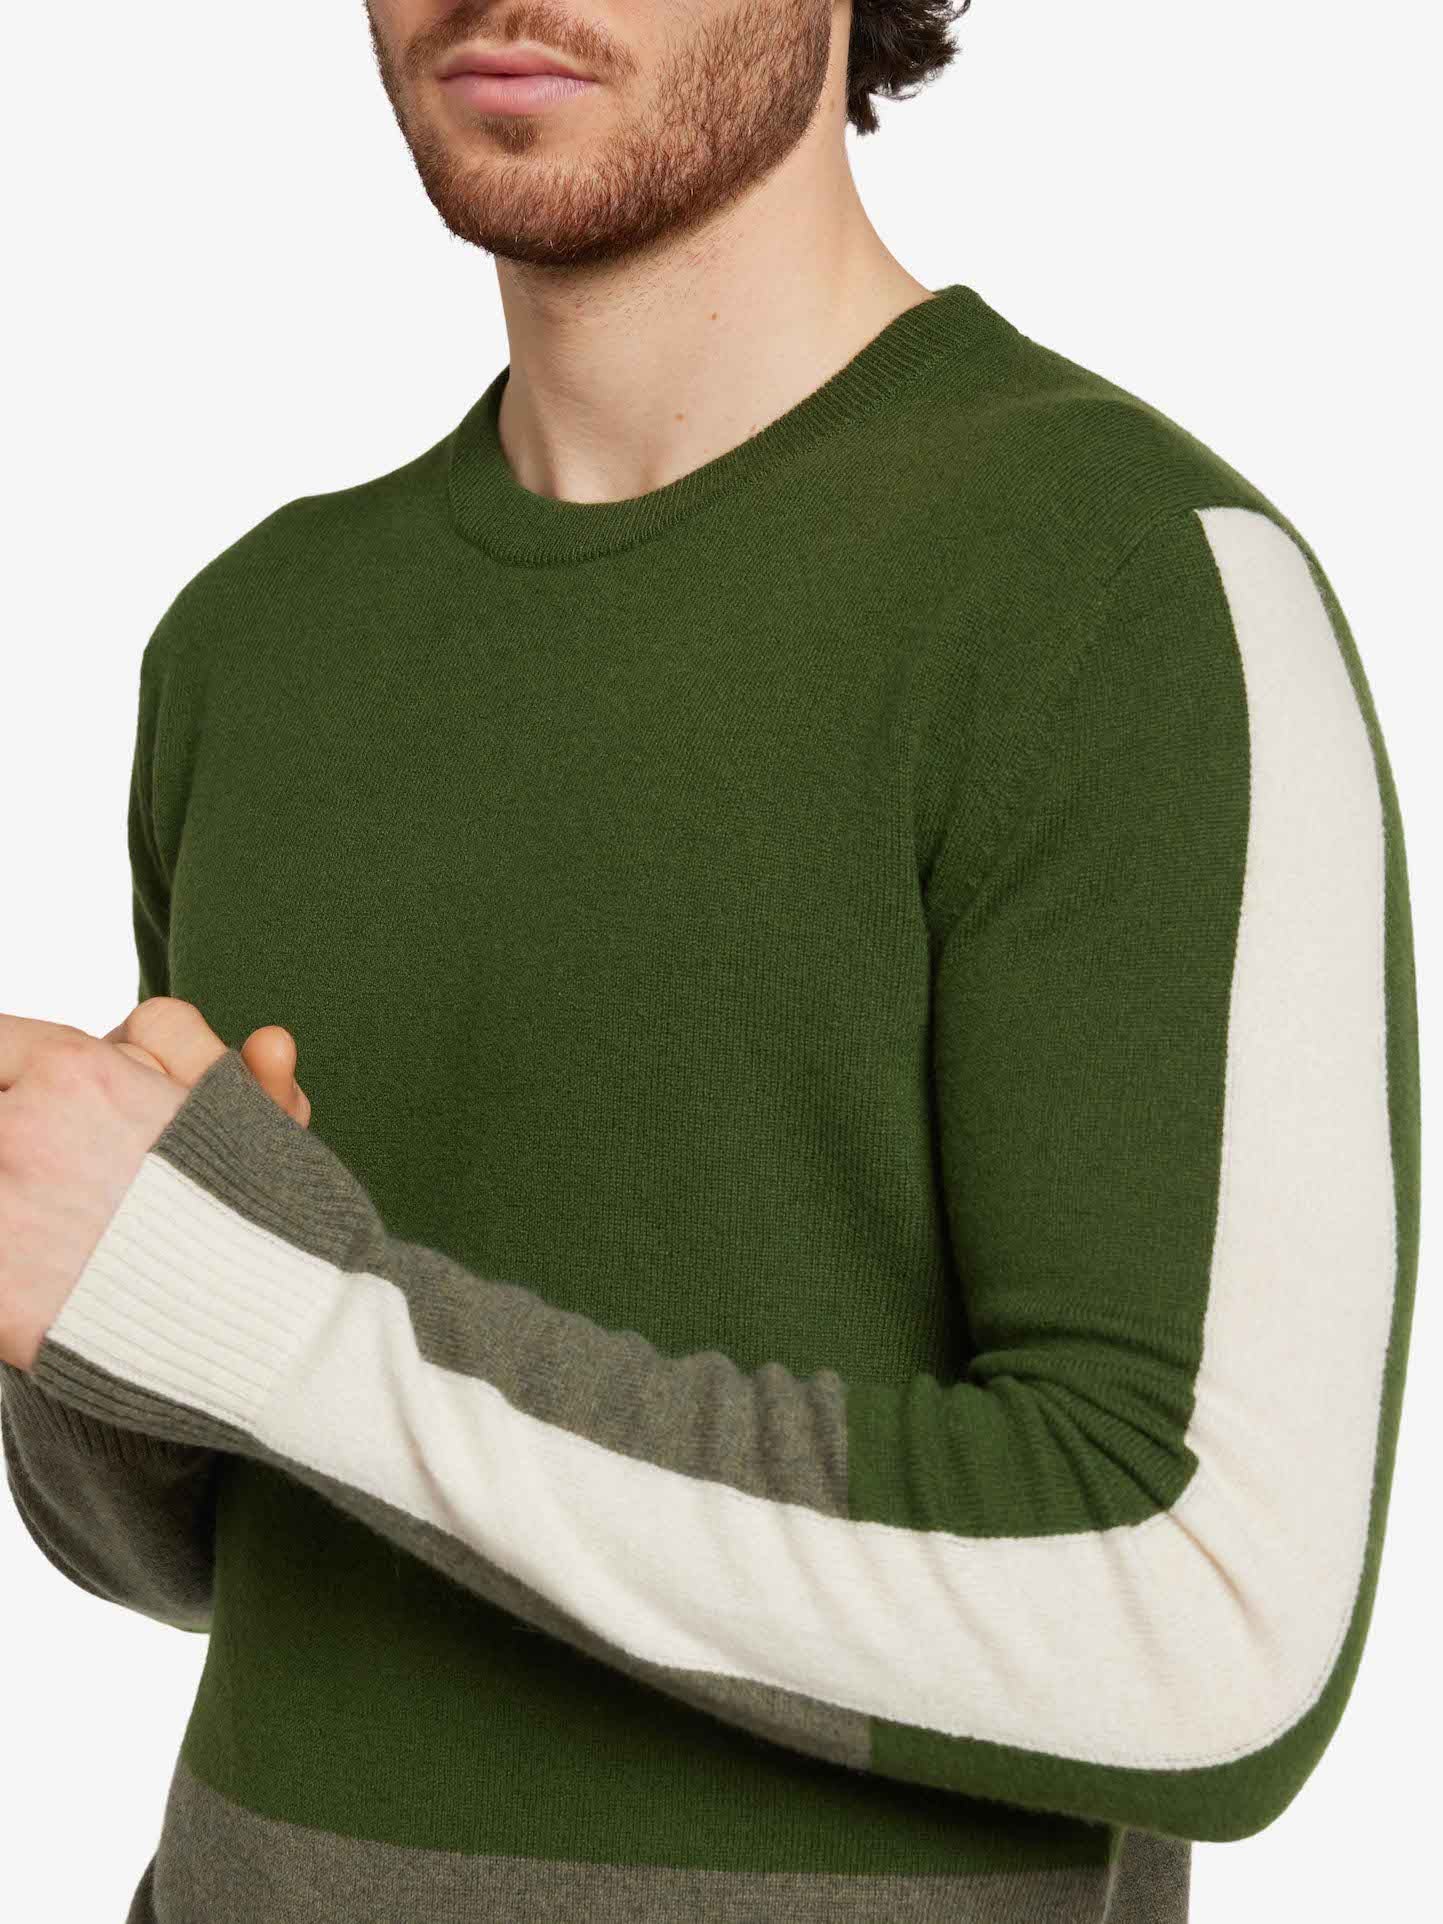 Morild Sweater Men Olive Green